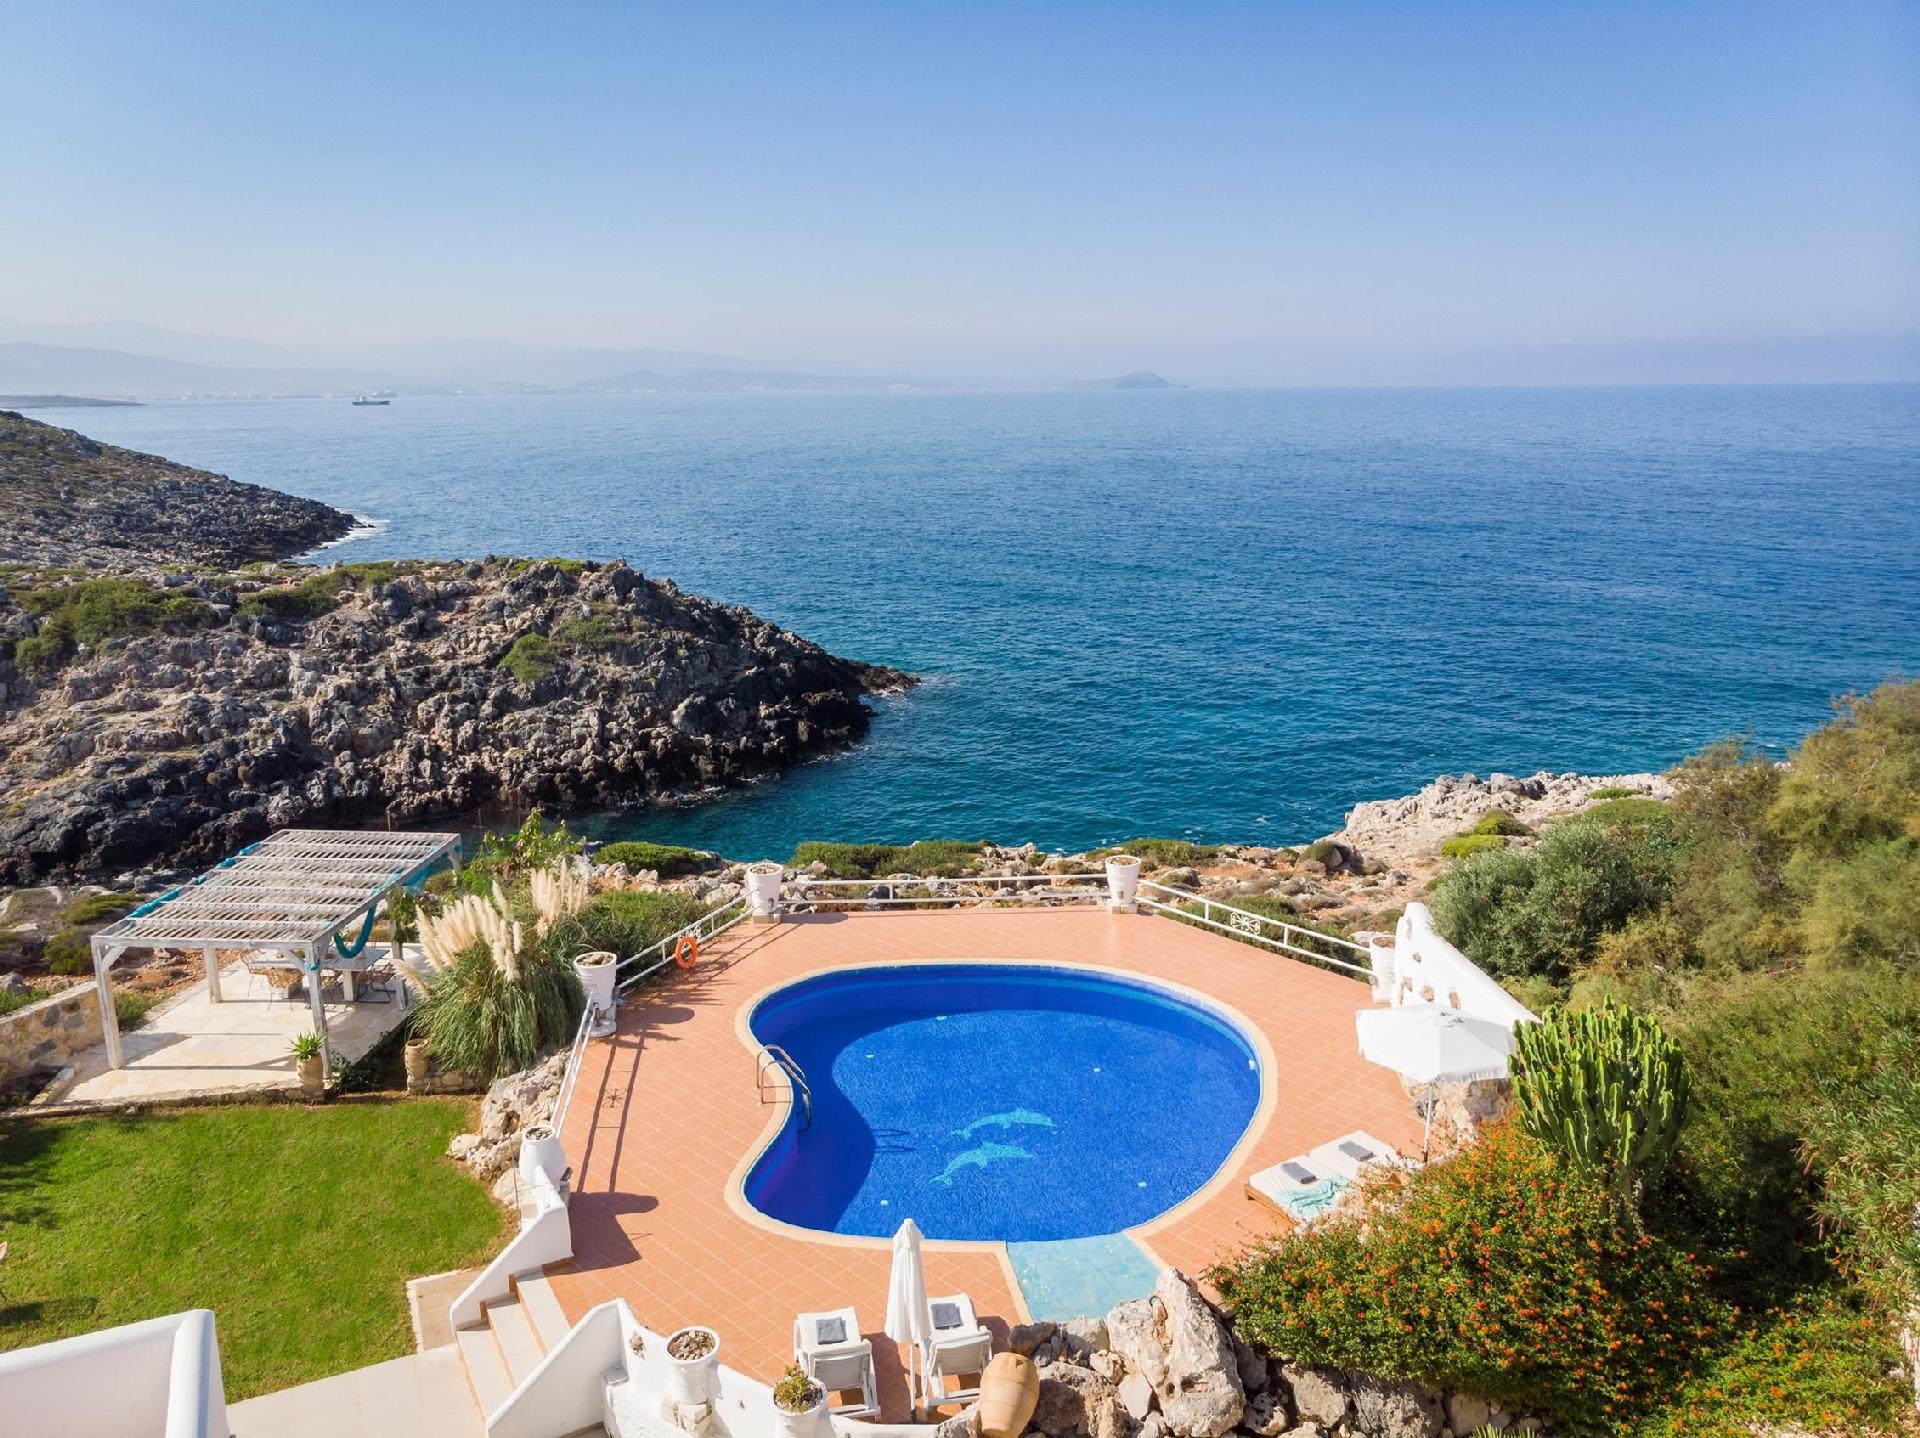 Ferienhaus mit Privatpool für 14 Personen ca. Ferienhaus in Griechenland